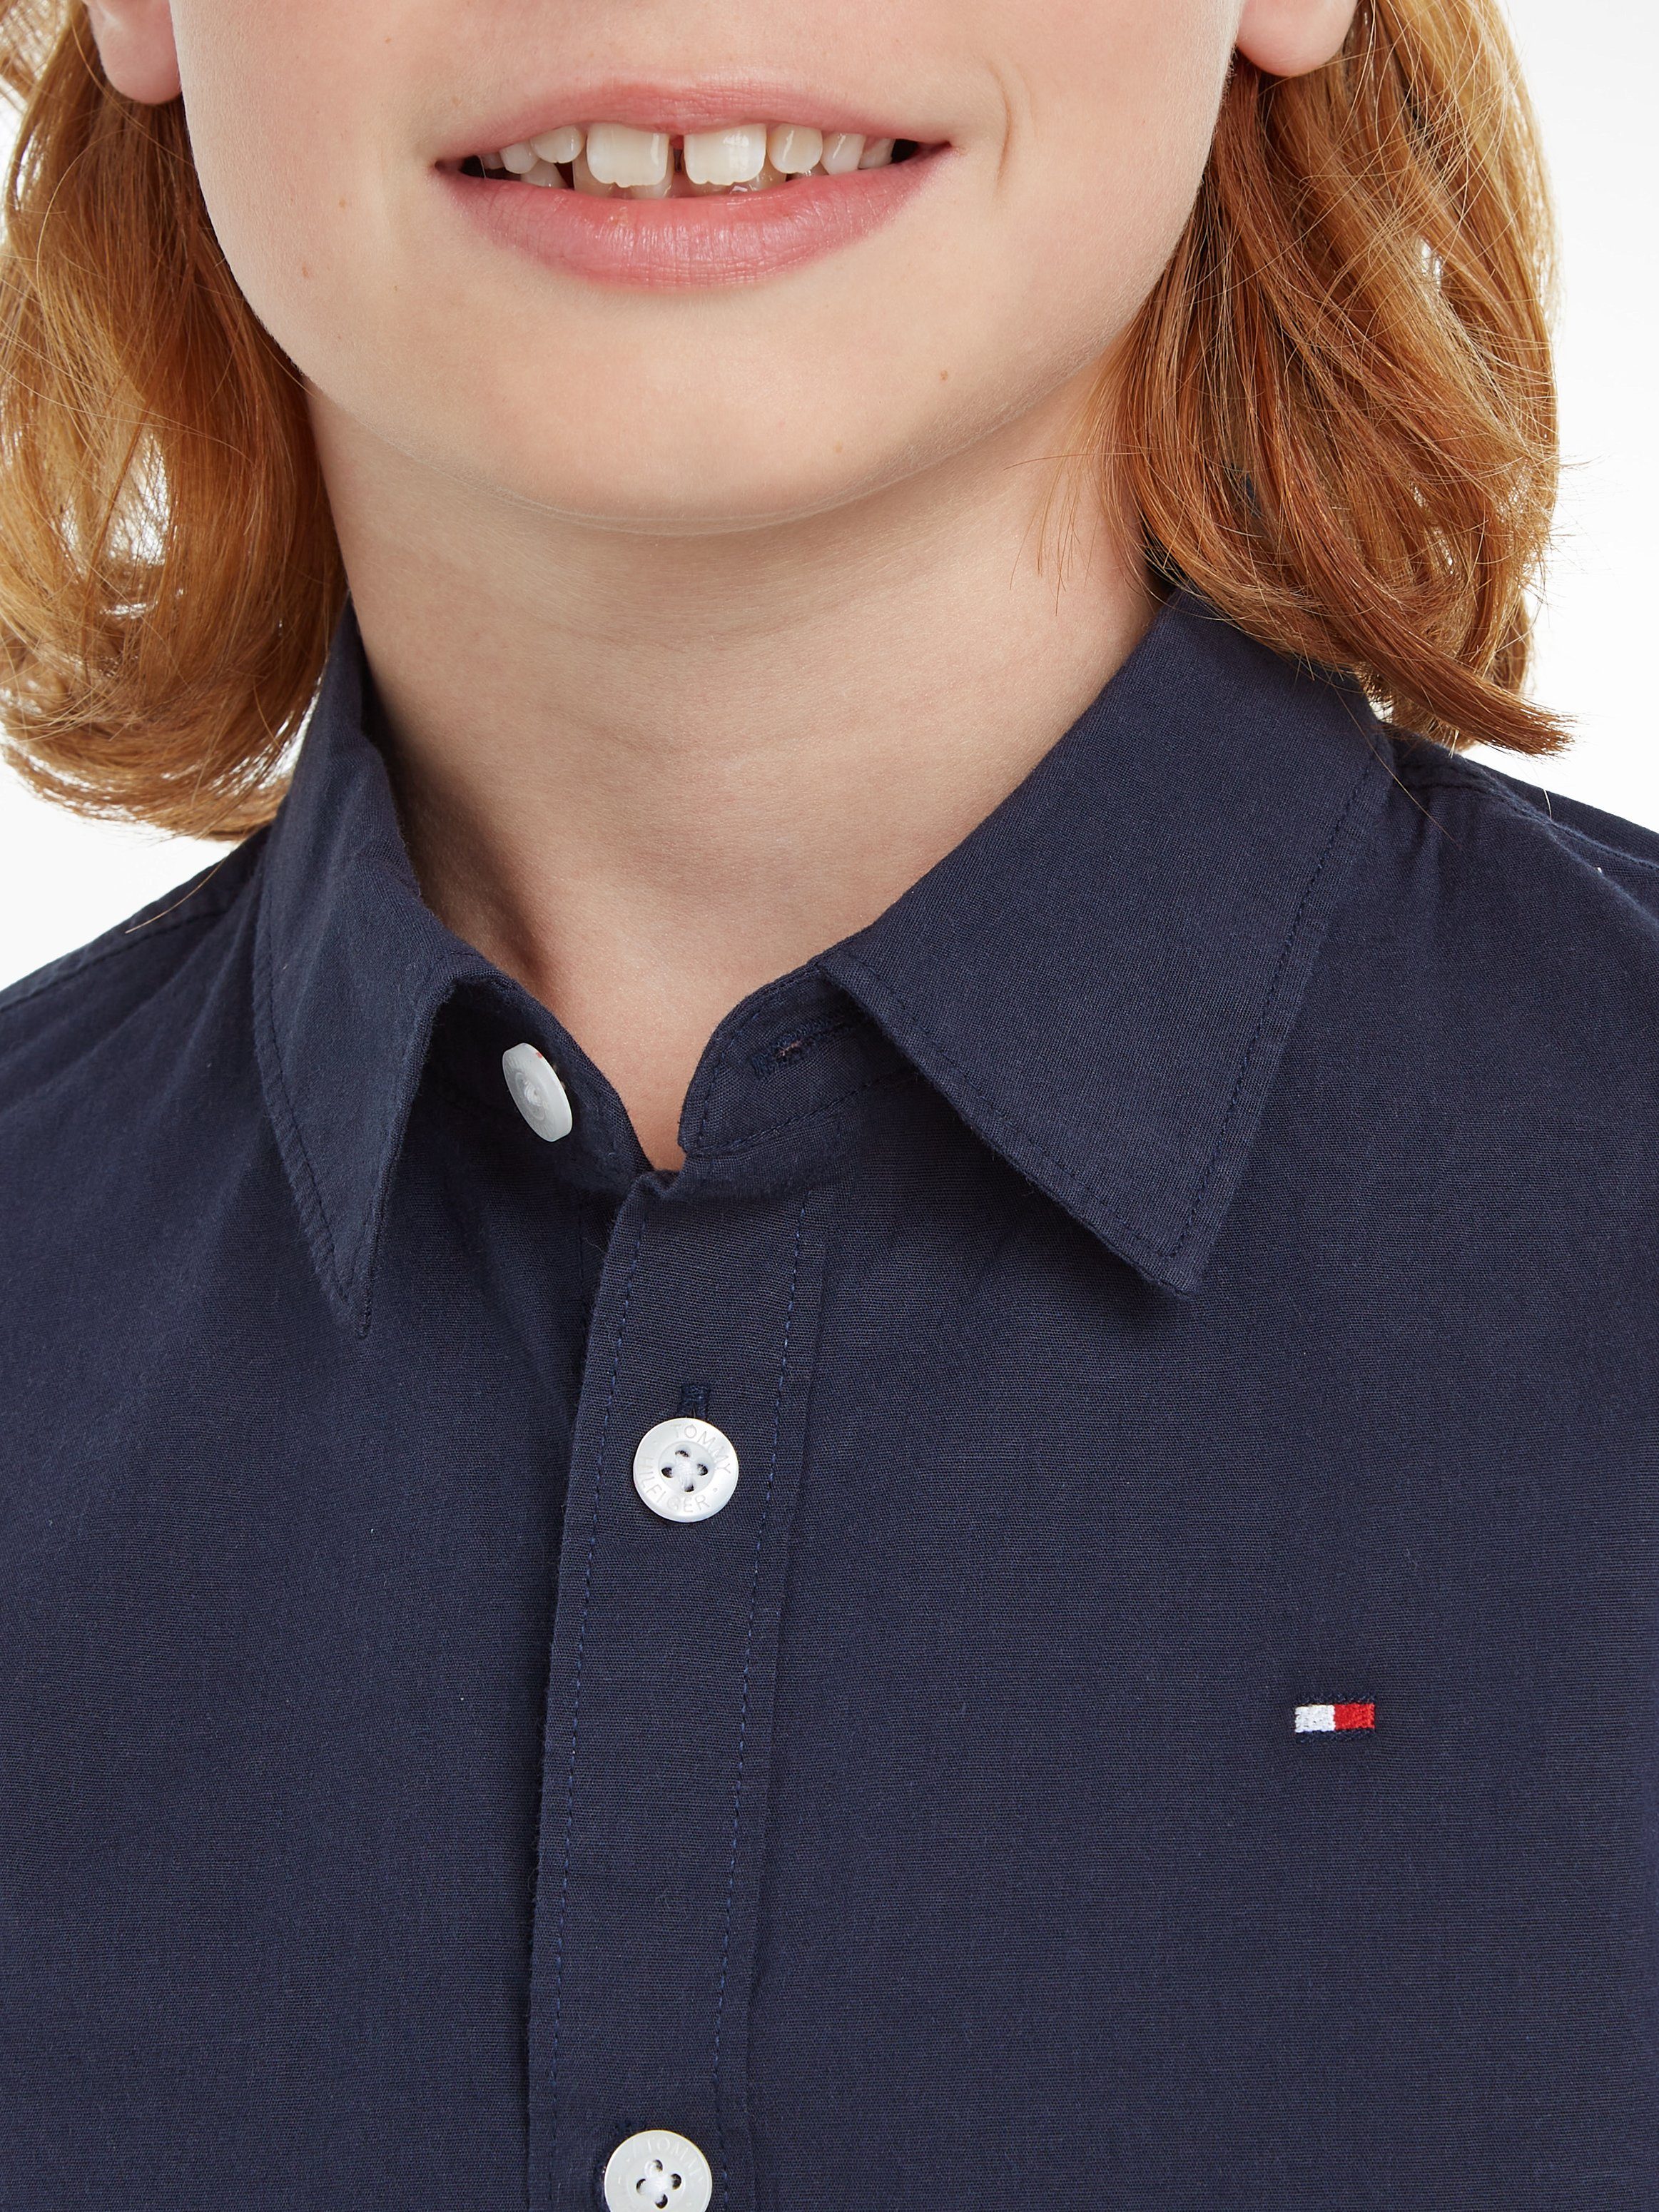 Tommy Hilfiger Kinder Kids Langarmhemd Junior MiniMe,für L/S Jungen POPLIN SOLID STRETCH SHIRT